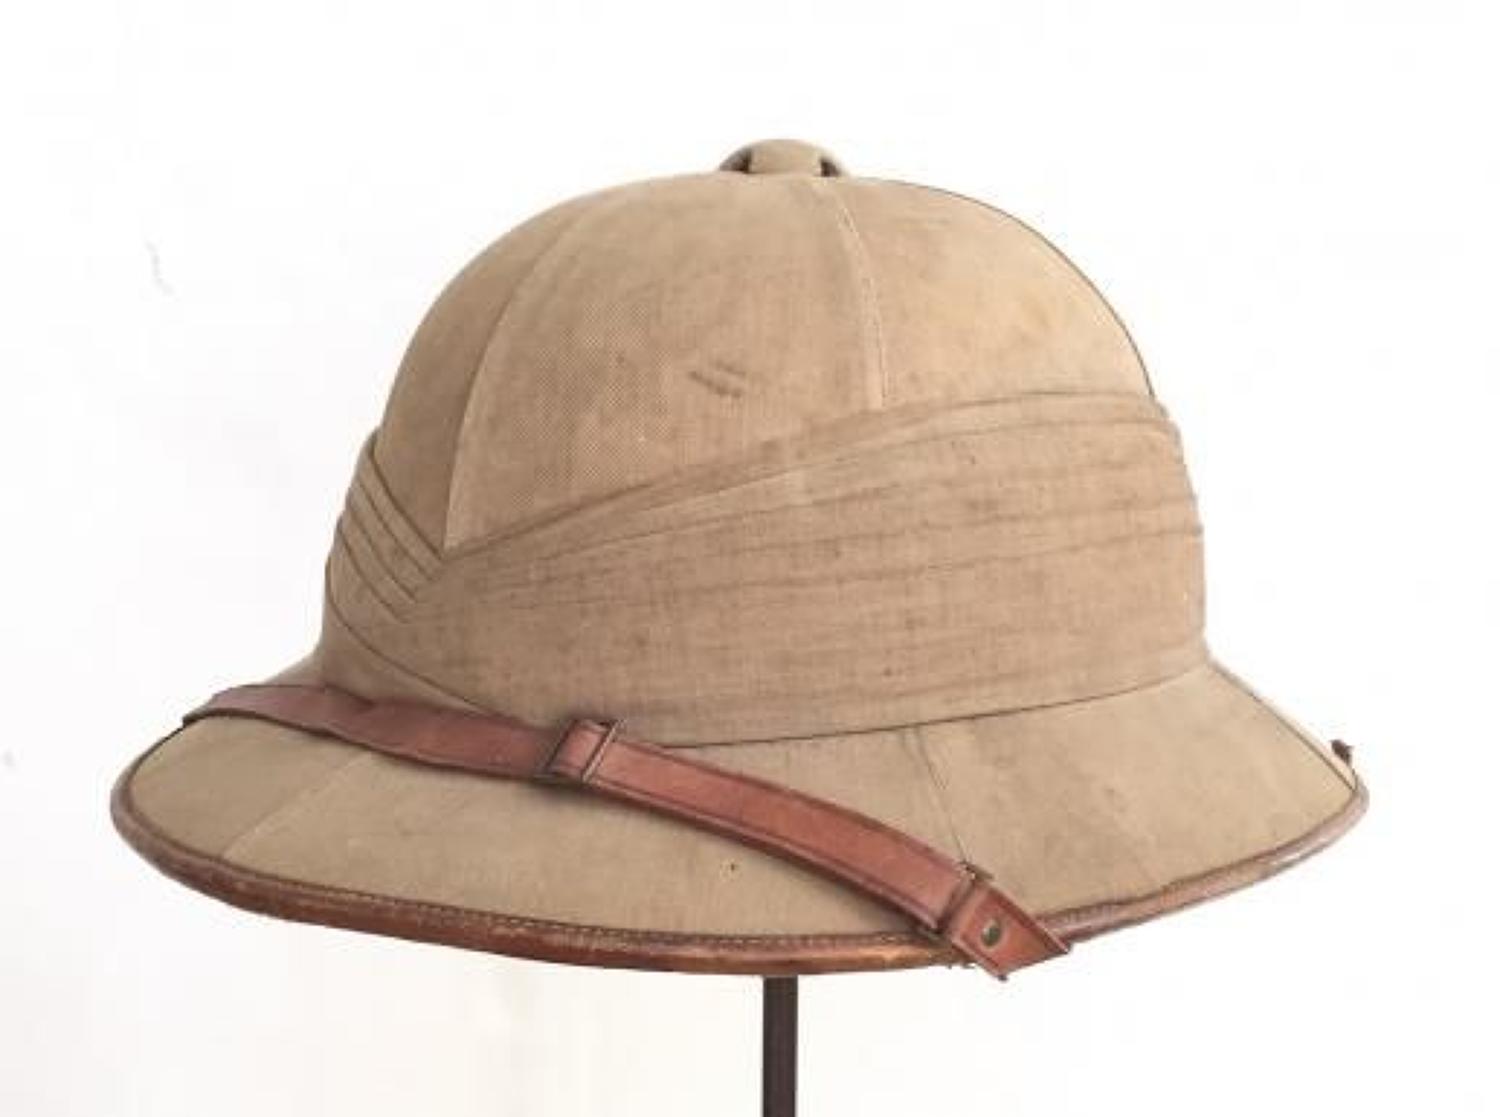 WW1 / Inter War Period Officer's Foreign Service Helmet